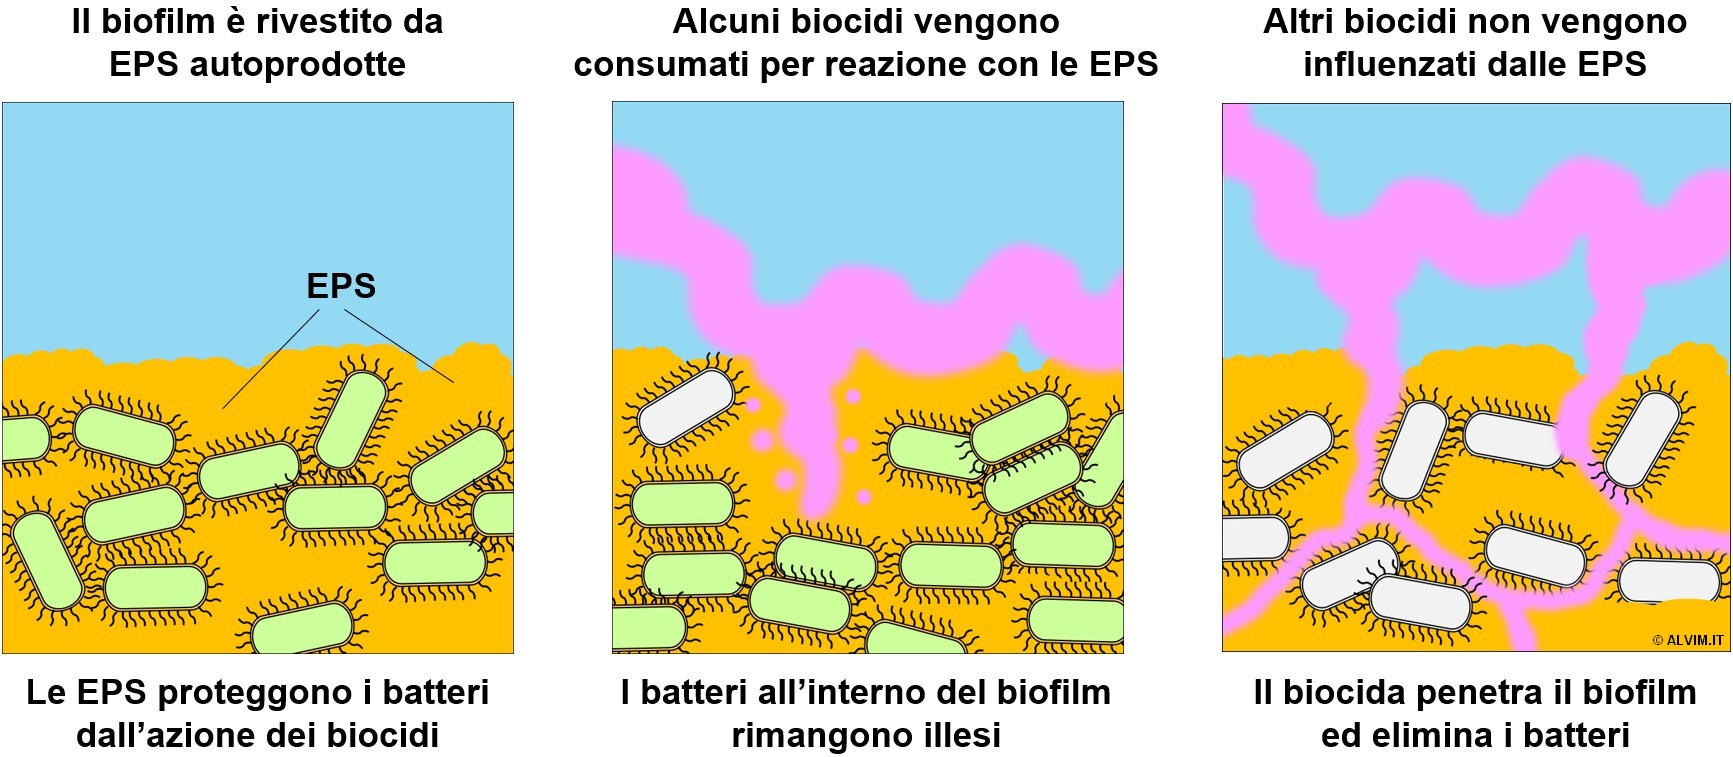 La capacità del biocida di penetrare il biofilm è inversamente proporzionale                                   alla sua reattività nei confronti dello strato di EPS